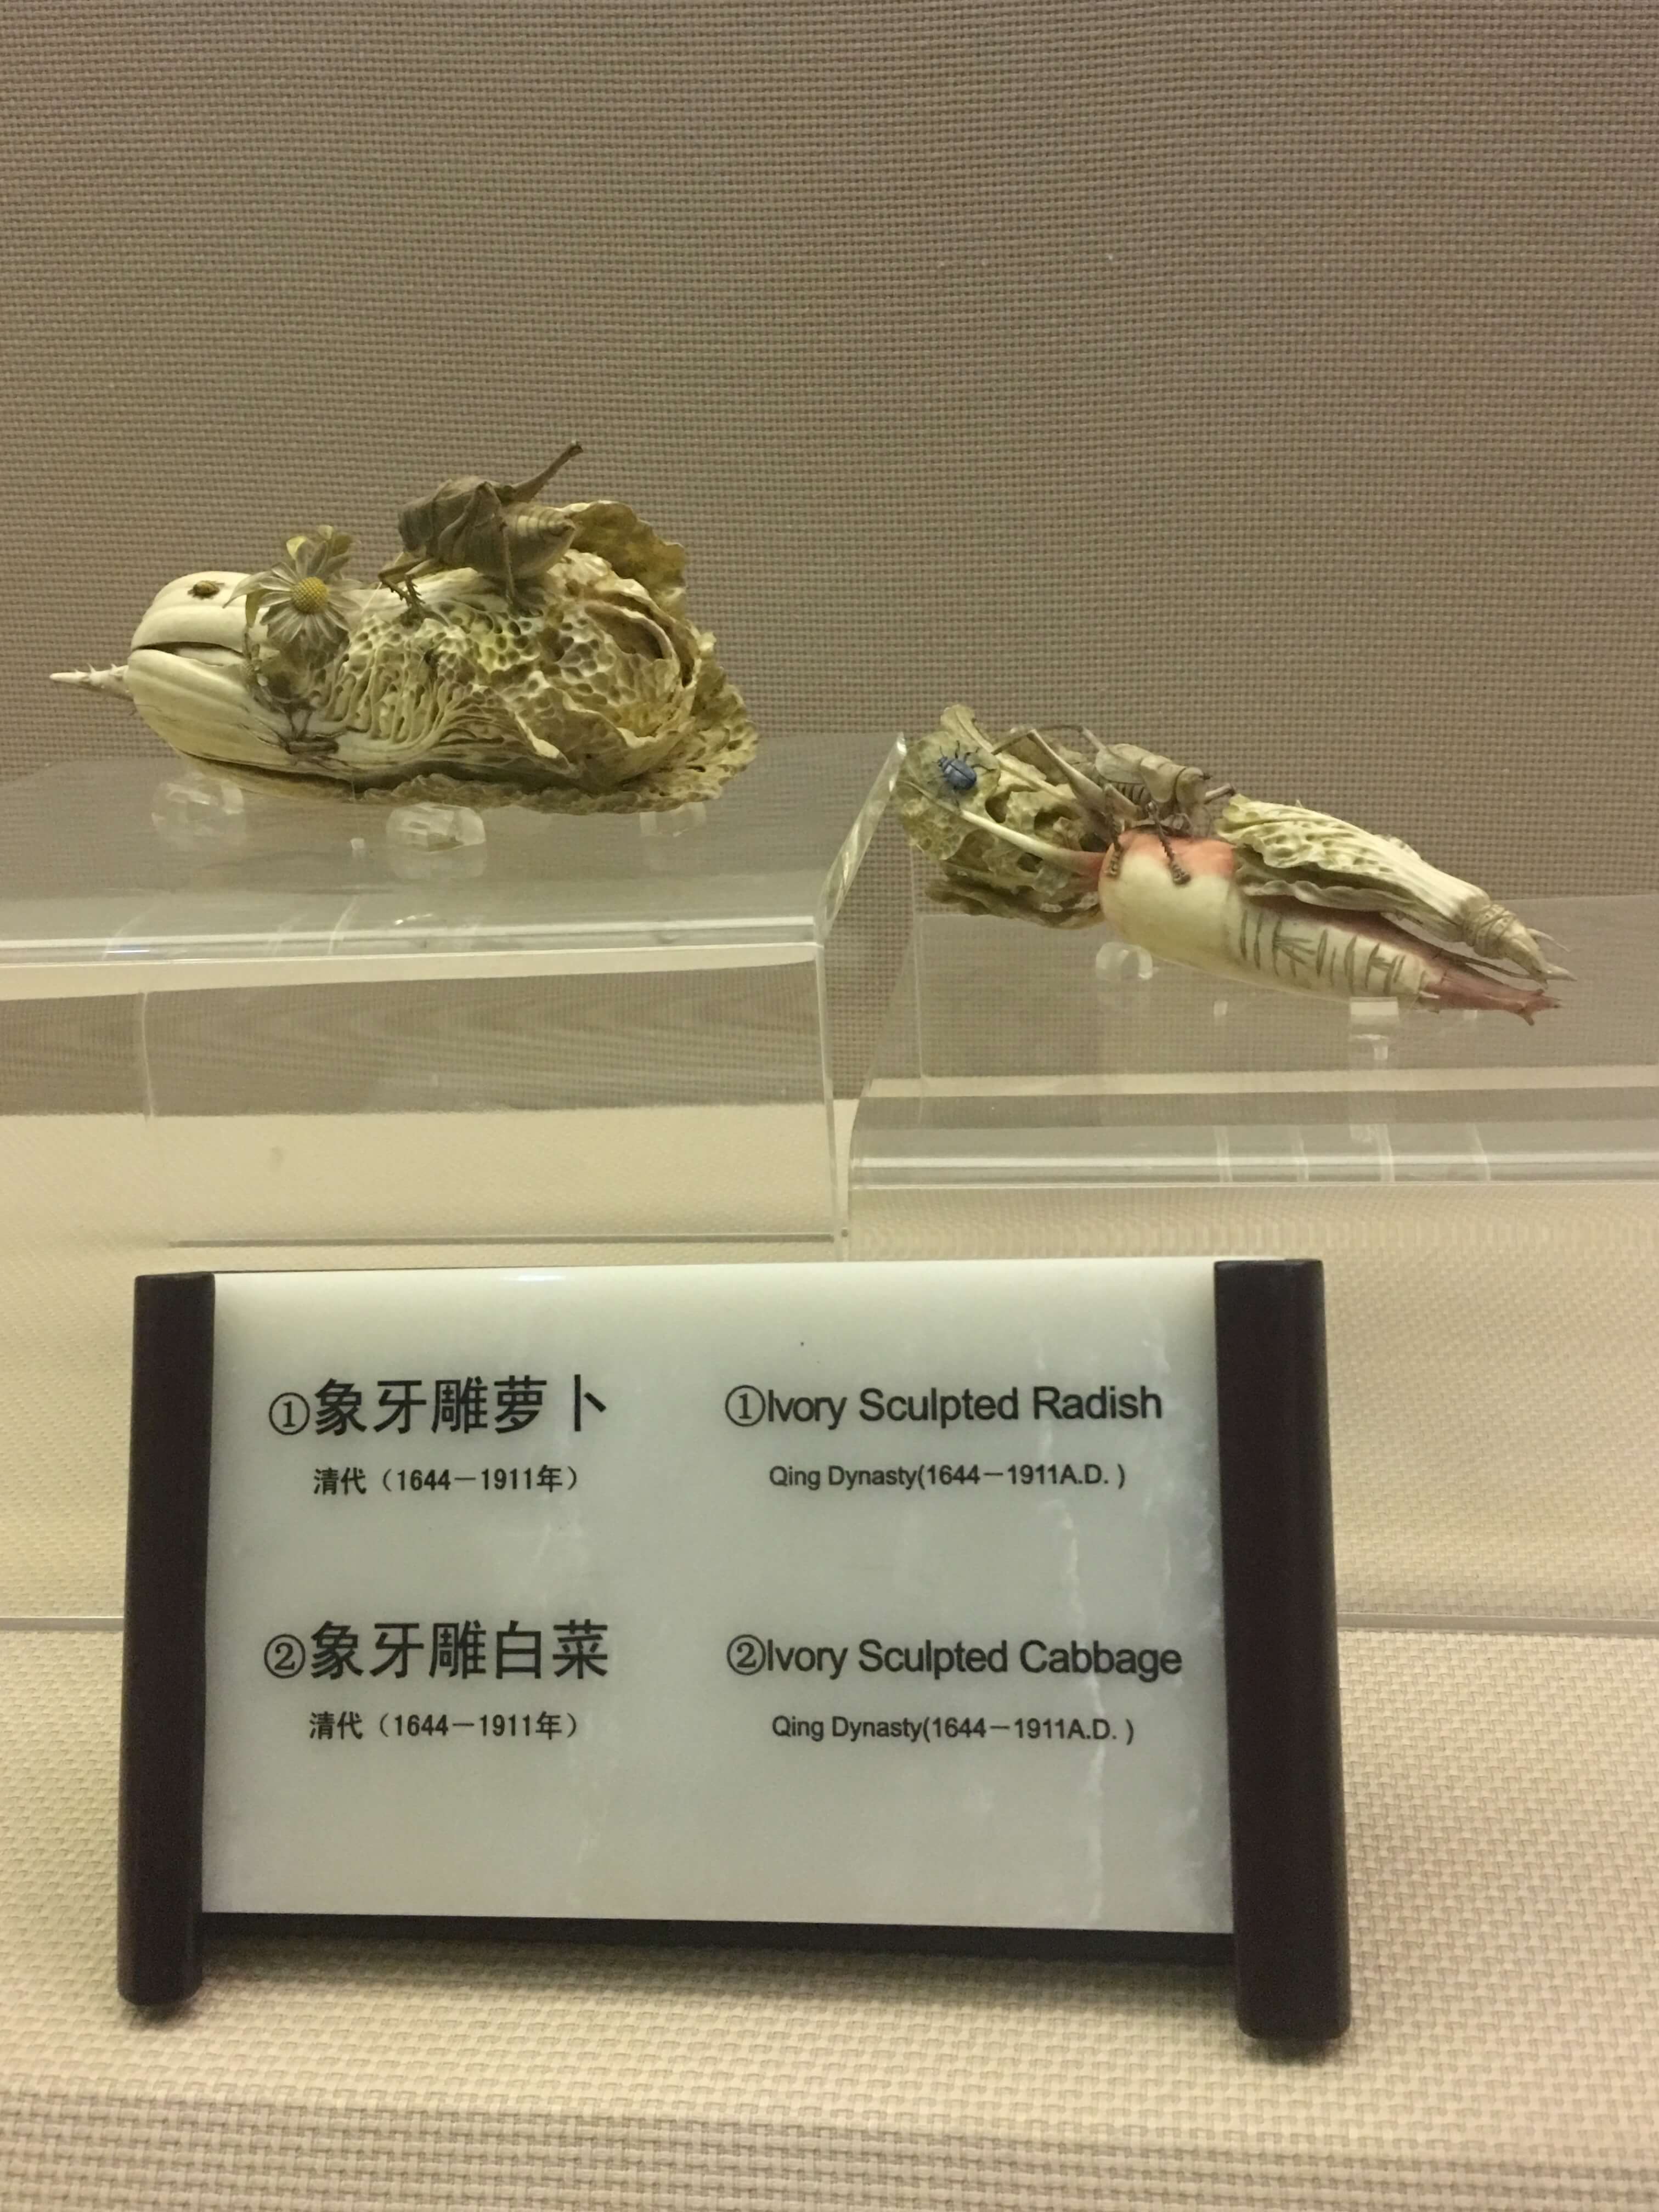 Chengdu Museum art